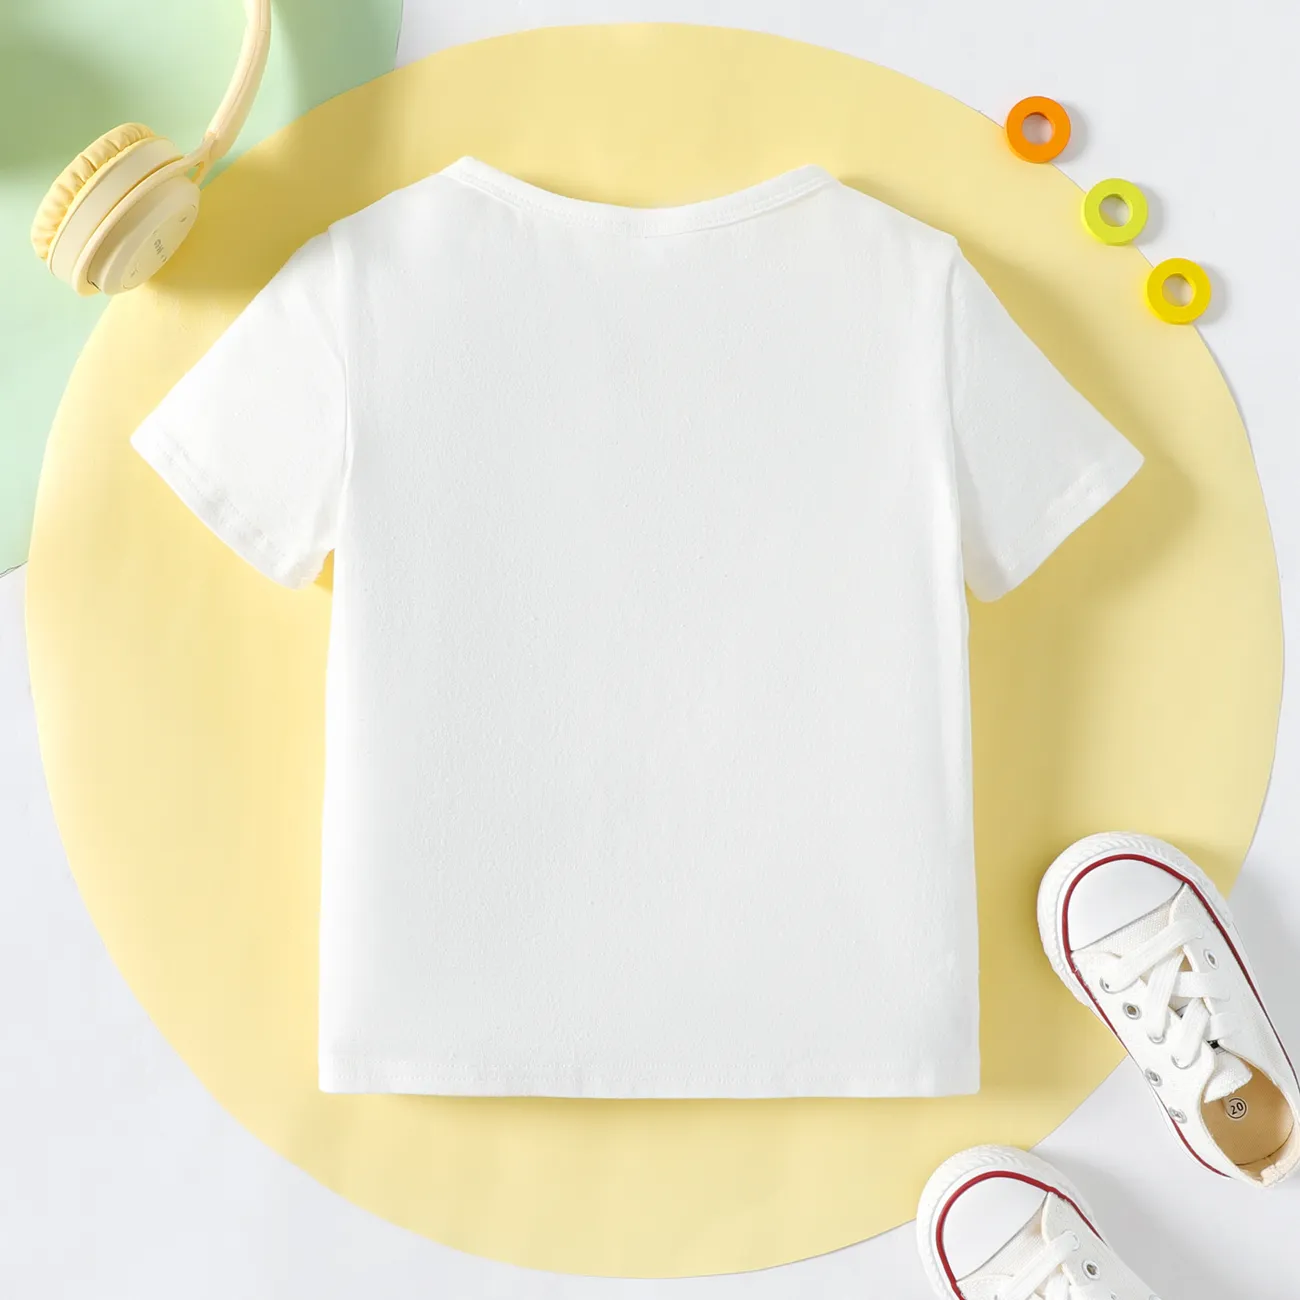 Enfant en bas âge Garçon Sportif Manches courtes T-Shirt Blanc big image 1